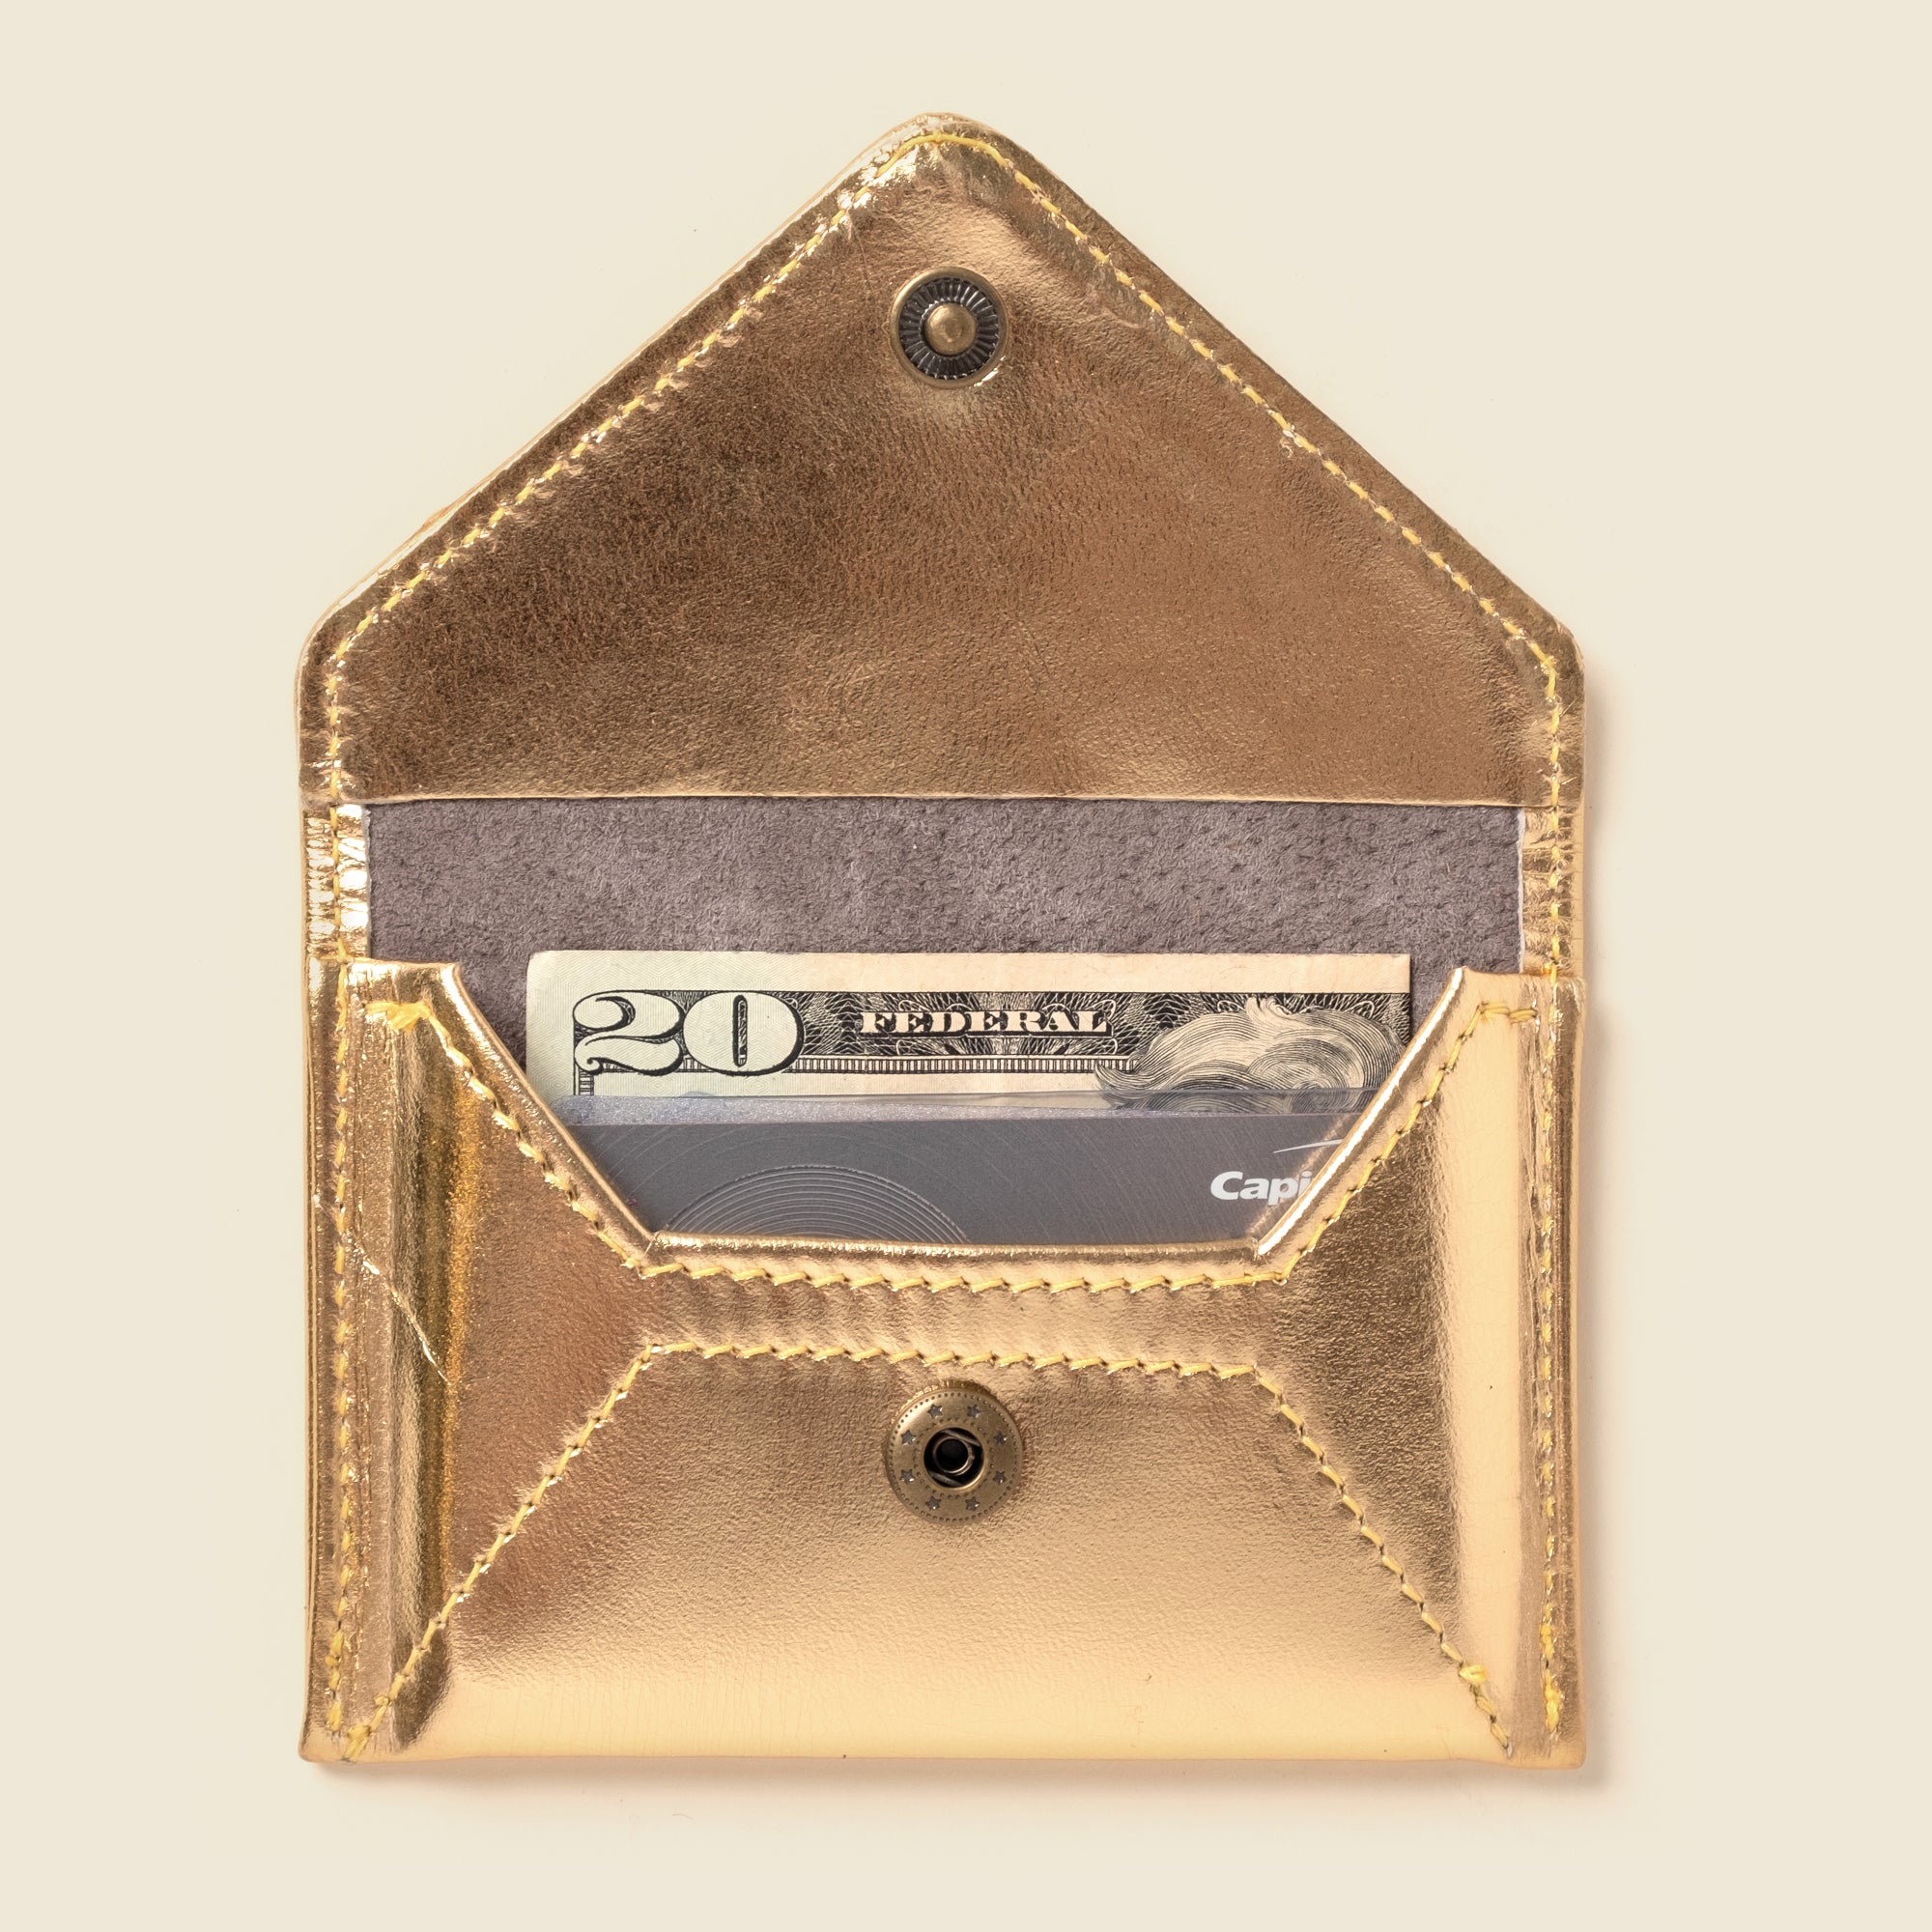 metallic gold envelope wallet for women with RFID blocking